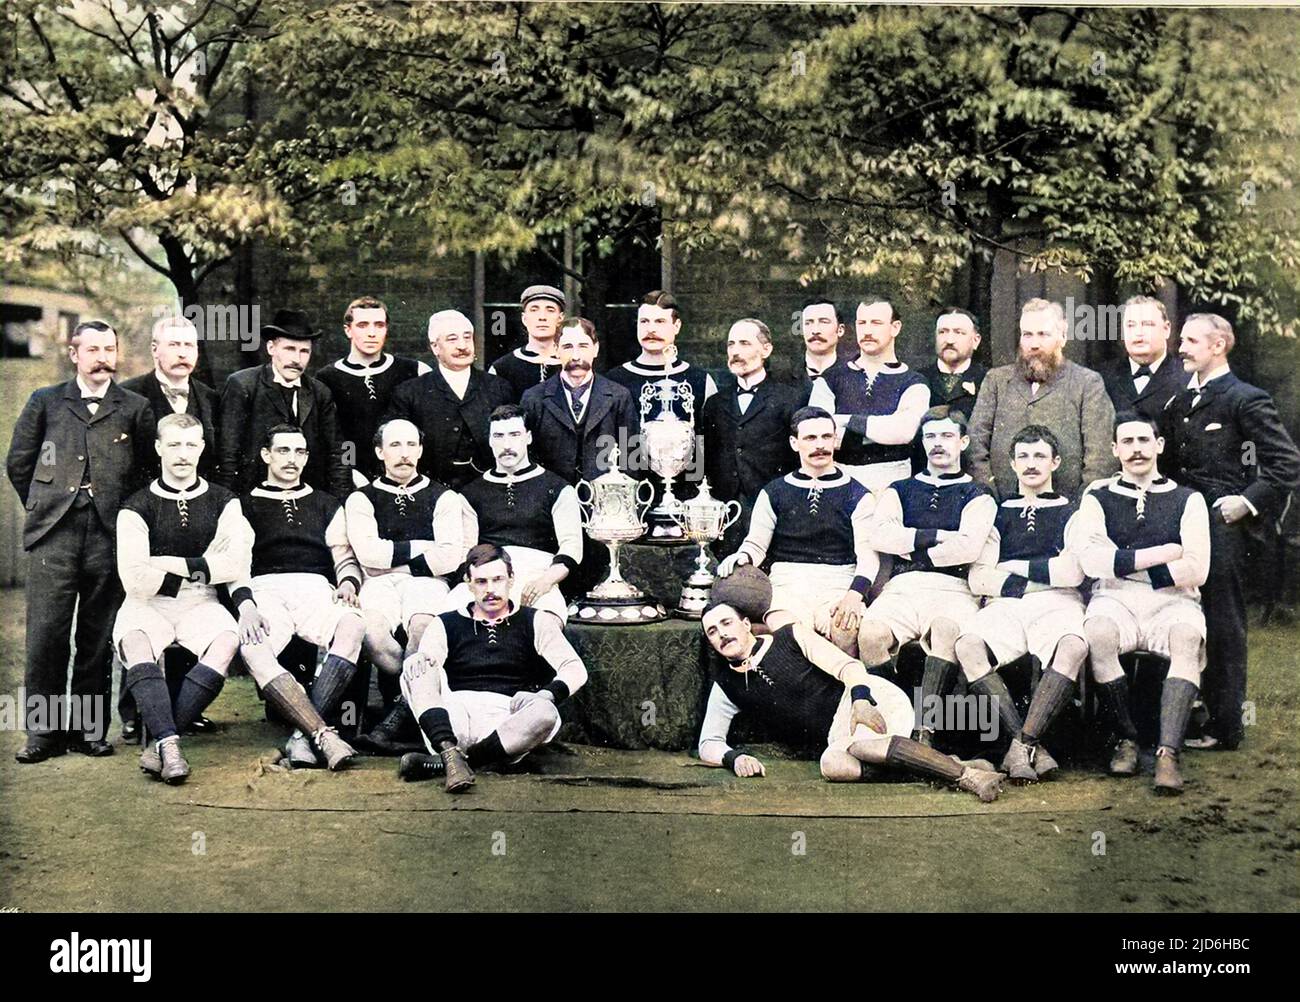 Aston Villa Football Club, mit dem Team für die Saison 1896-1897. Das Foto zeigt: Hintere Reihe, von links nach rechts: G.B. Ramsay (Sekretär), Dr. v.a. Jones, J.Grierson (Trainer), H.Spencer, F.Cooper, T.Wilkes, J. Ansell (Präsident), D. Hodgetts, J.E. Margoschis (Vorsitzender), C.S. Johnstone, J. Welford, I. Whitehouse, W. McGregor, J.T. Lees, F.W. Spülen. Mittlere Reihe, sitzend, links nach rechts: R. Chatt, J.W. Crabtree, J. Reynolds, Jas. Cowan, J. Devey (Kapitän), F. Burton, D. Athersmith, J. Campbell. Erste Reihe, am Boden, von links nach rechts: S. Smith, John Cowan. Kolorierte Version von: 10219029 Datum: Stockfoto